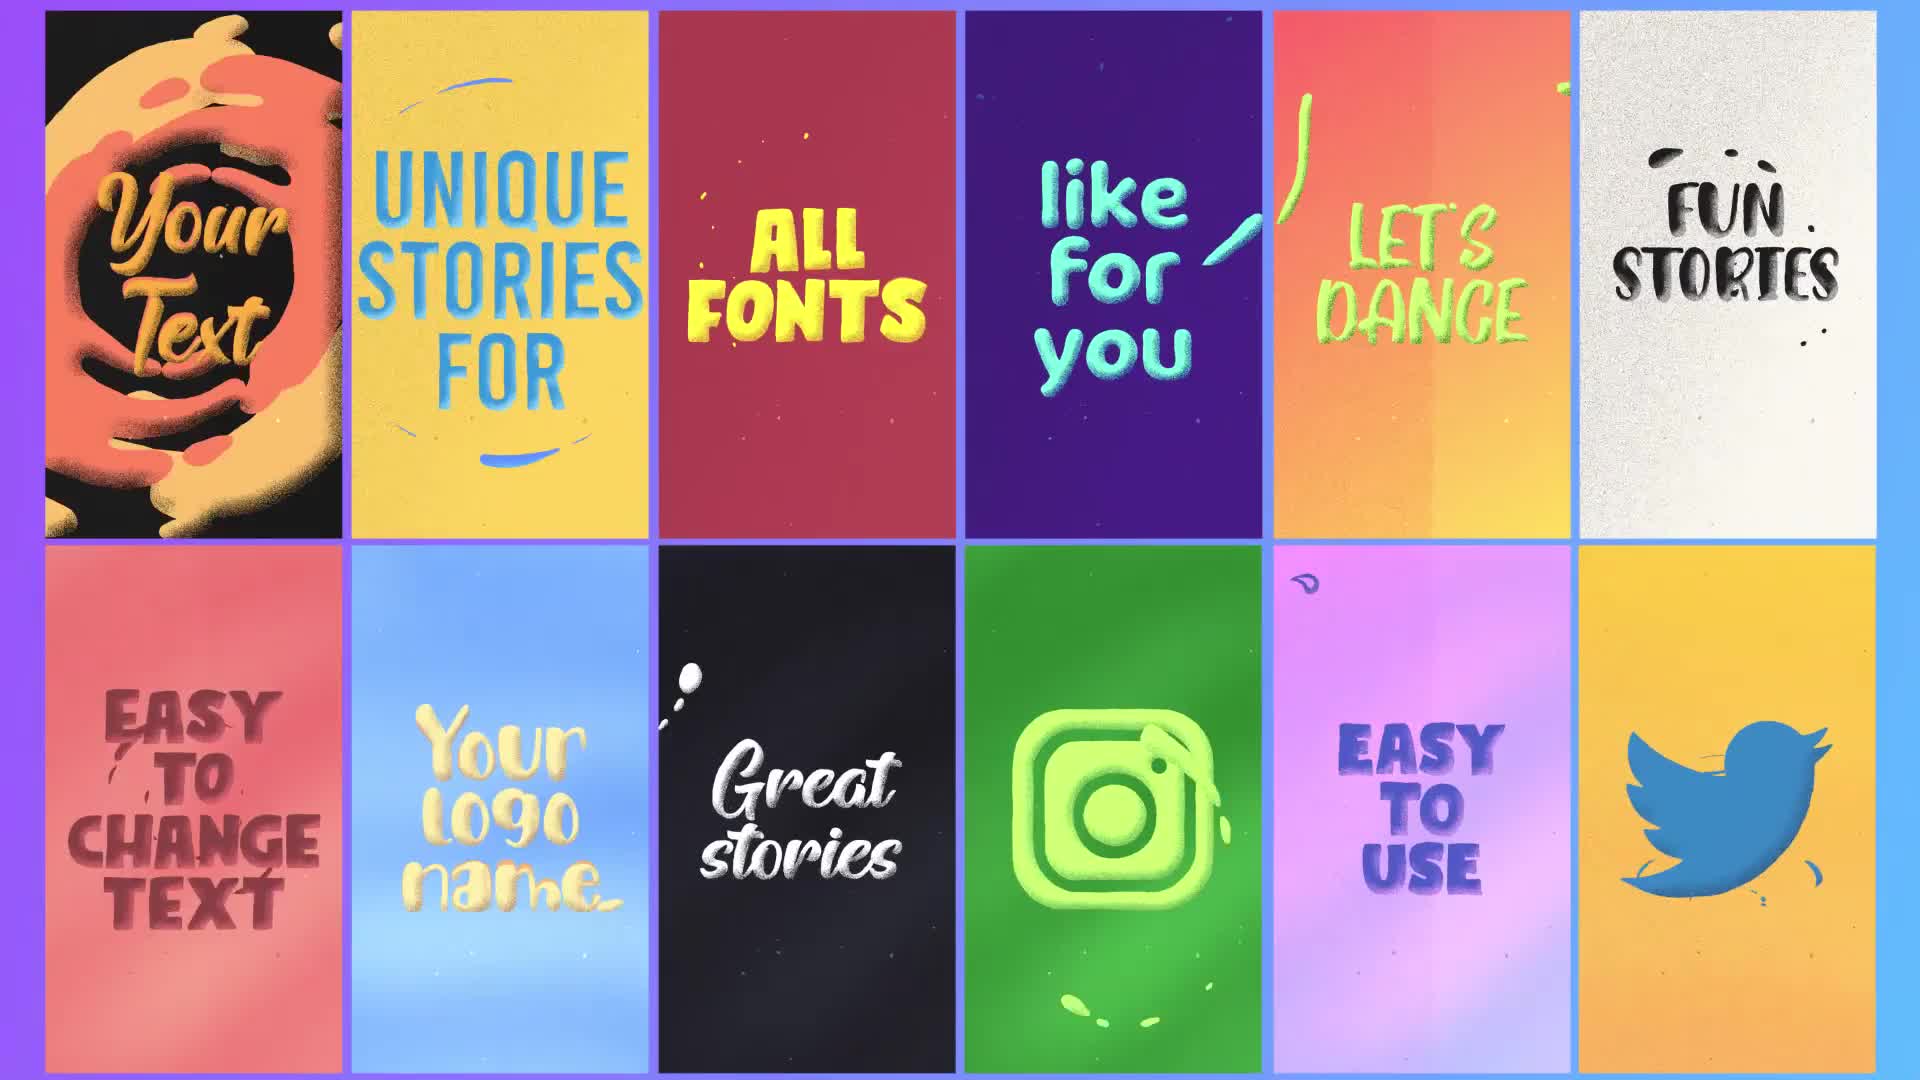 Instagram Text Stories | Premiere Pro MOGRT Videohive 32367315 Premiere Pro Image 1